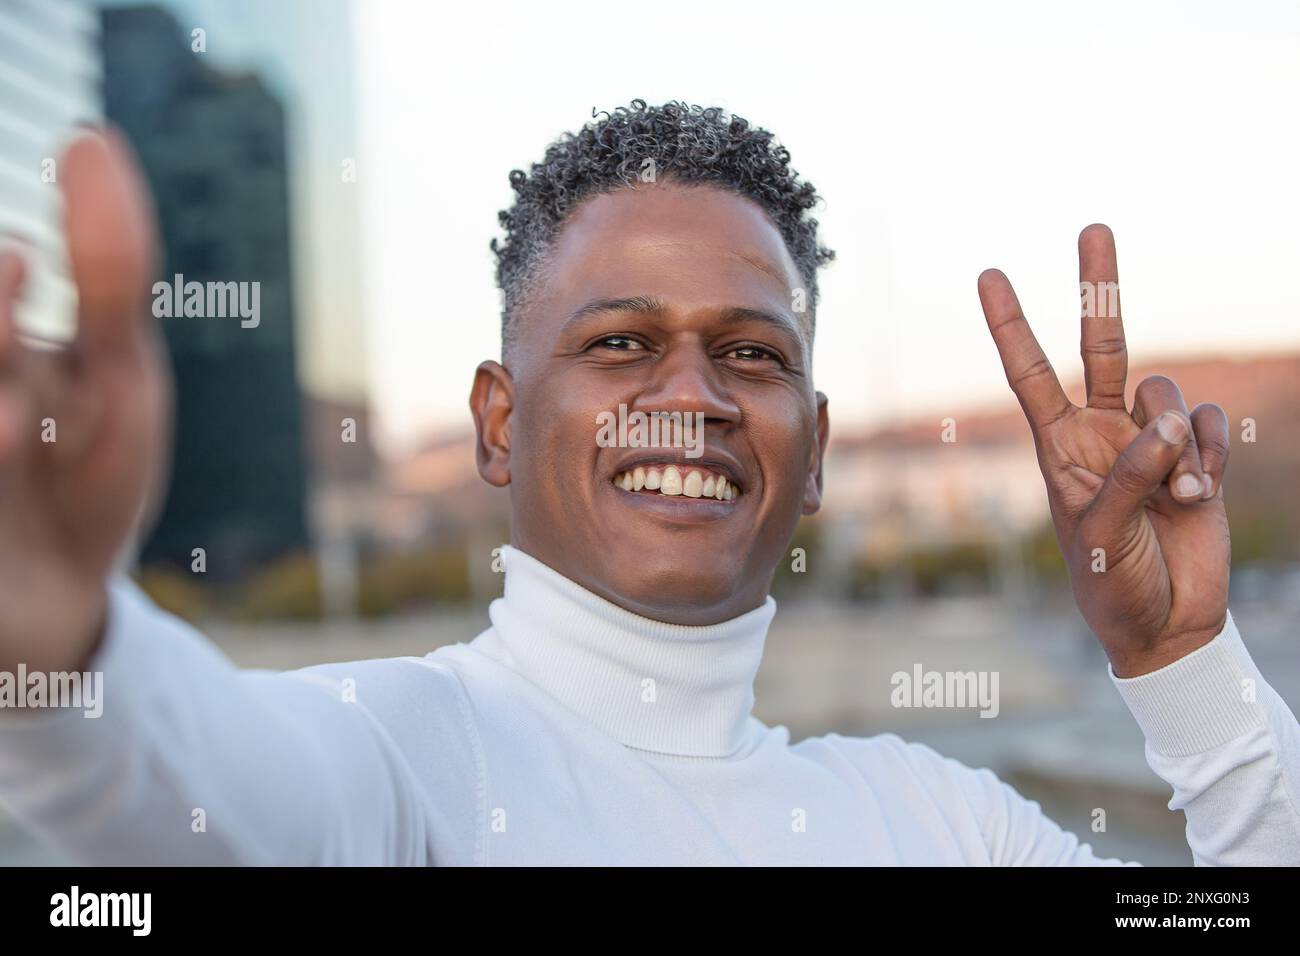 Lächelnder junger Mann, der Siegesgeste zeigt, während er Selfie in der Stadt macht Stockfoto